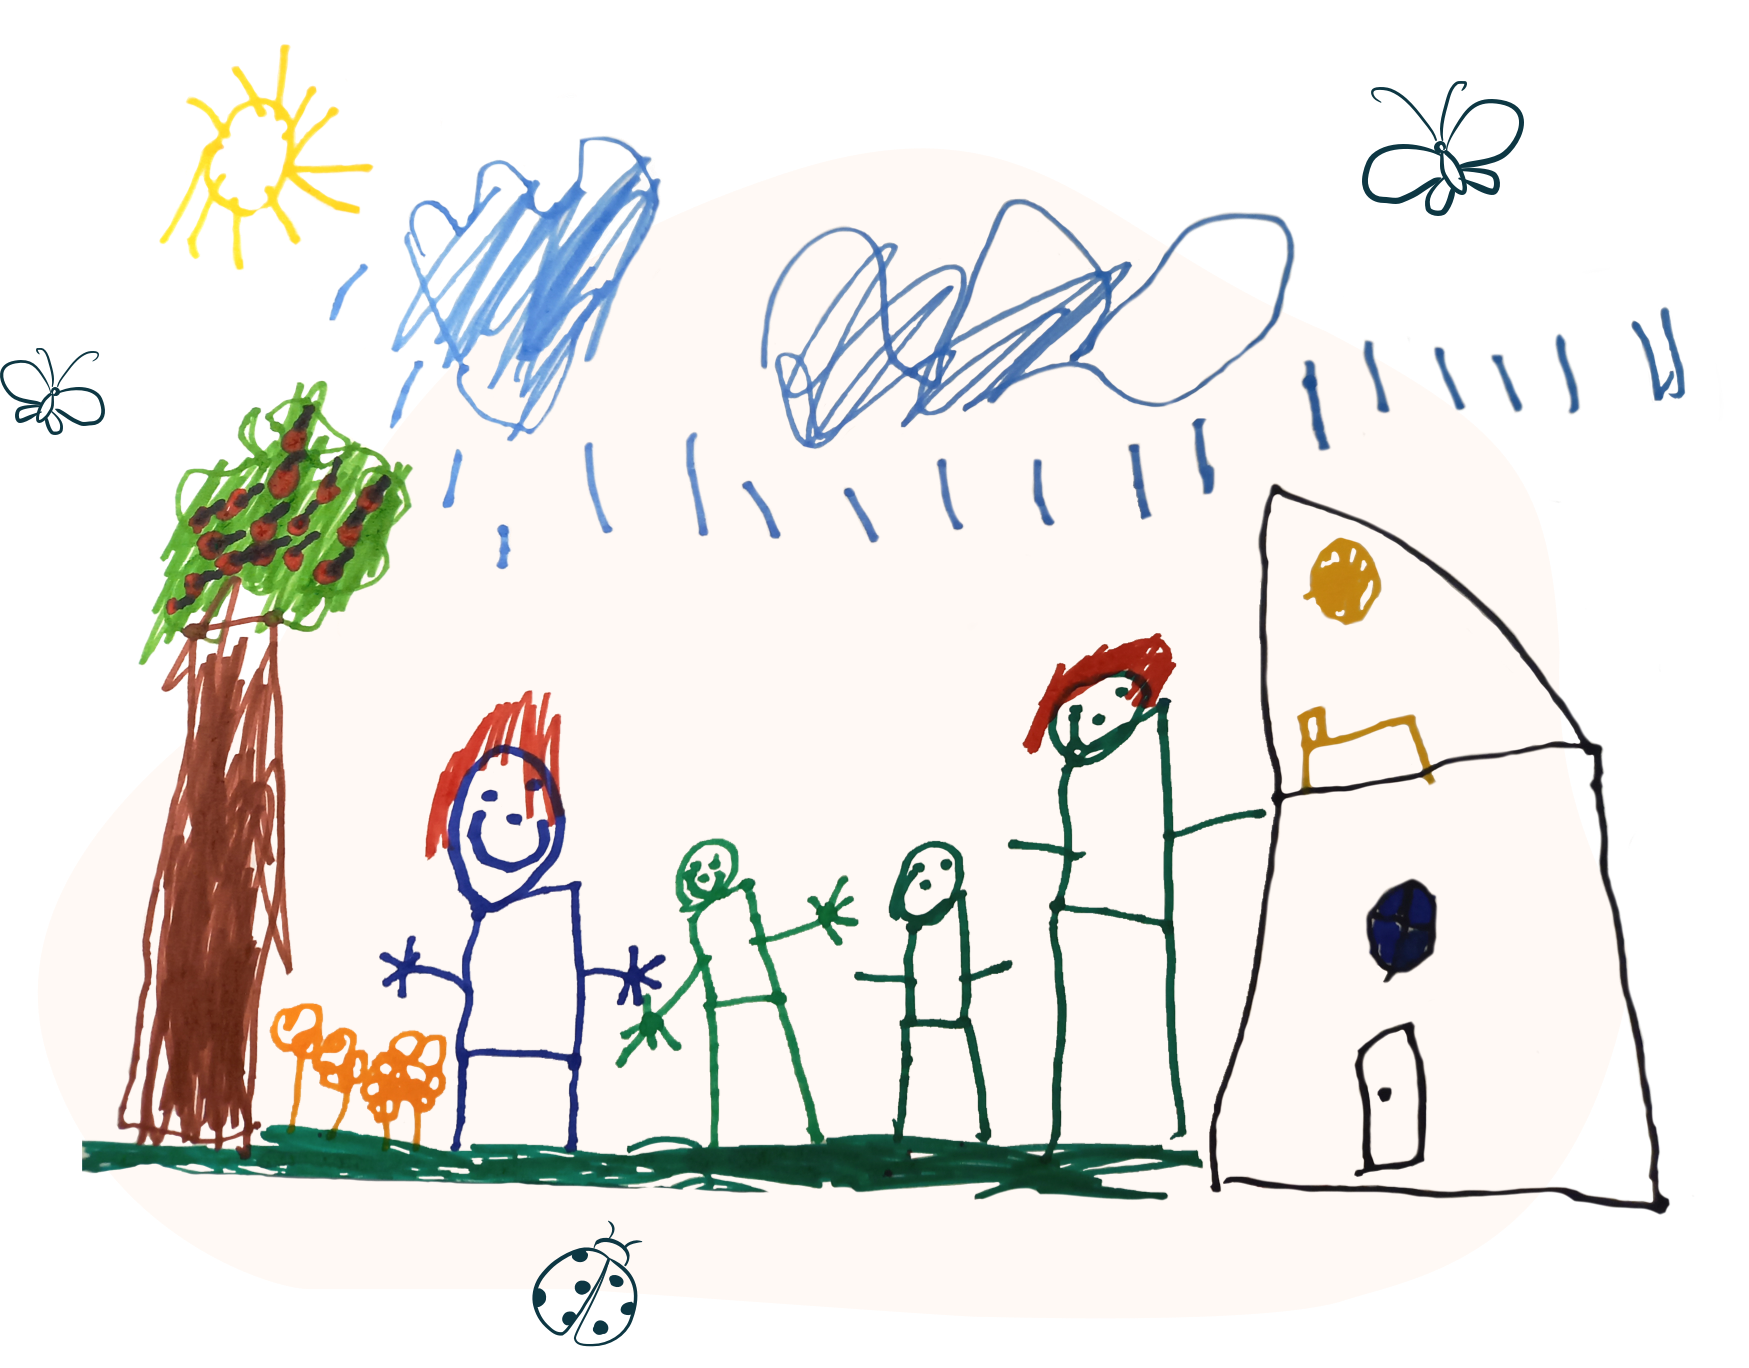 Bērna zīmējums ar četriem cilvēkiem (divi lielāki, divi mazāki), māja, koks, mākoņi, saule un kukaiņi